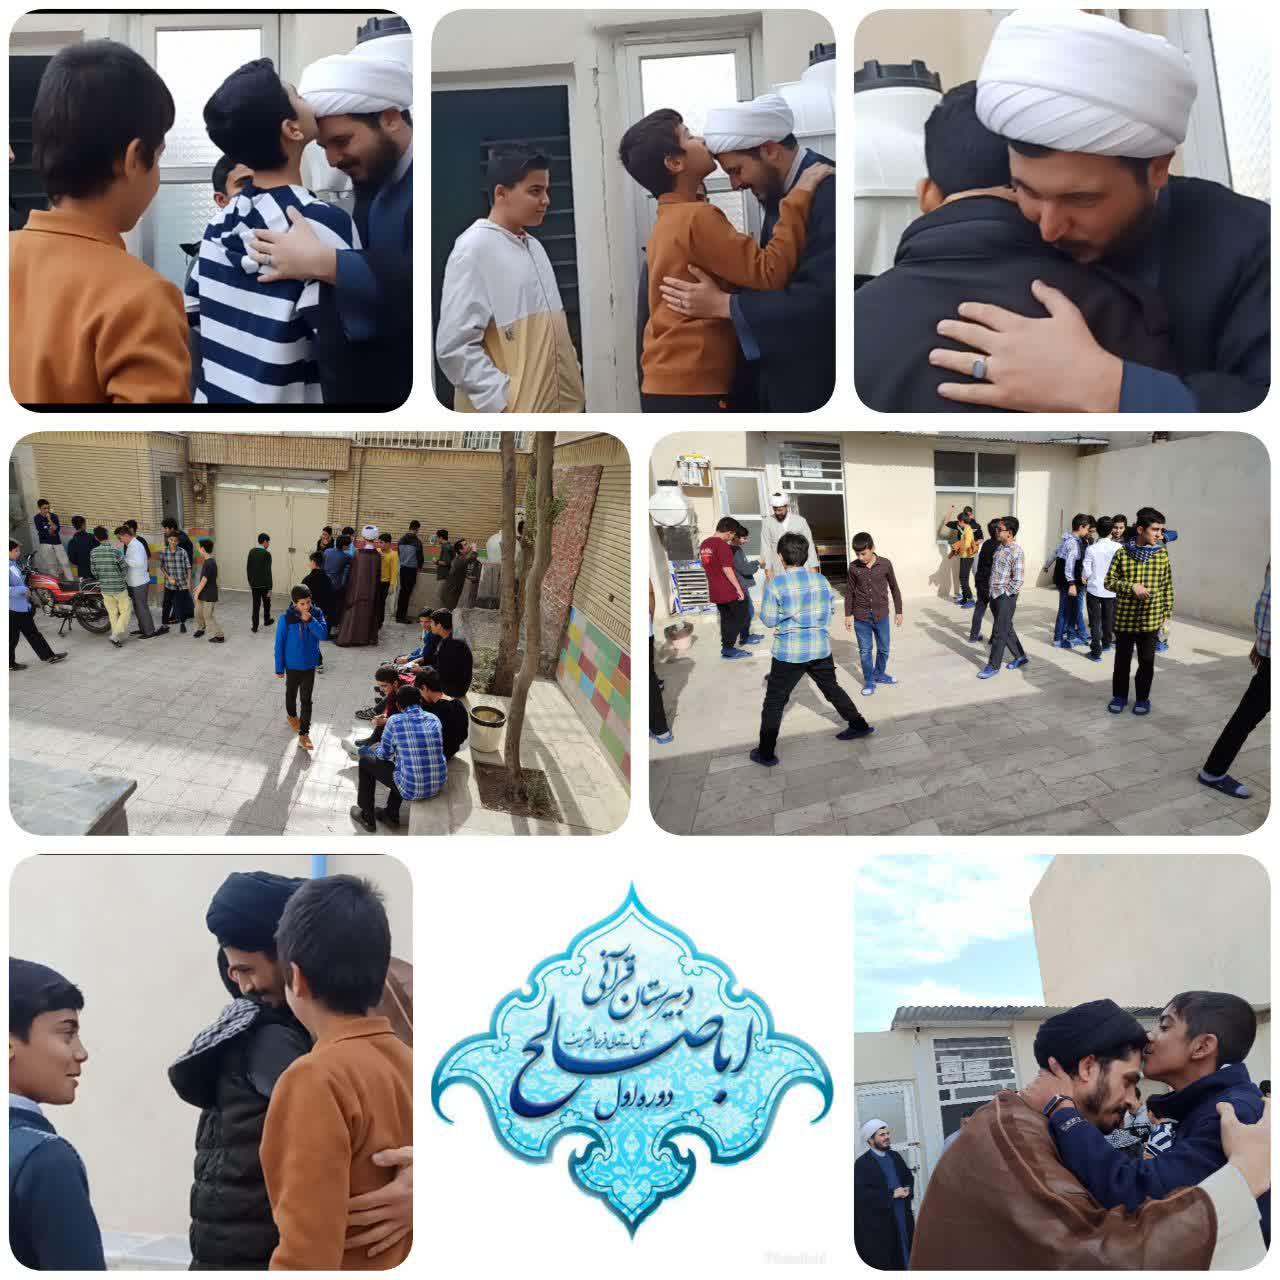 ادای احترام دانش آموزان یزدی به معلمان روحانی خود  